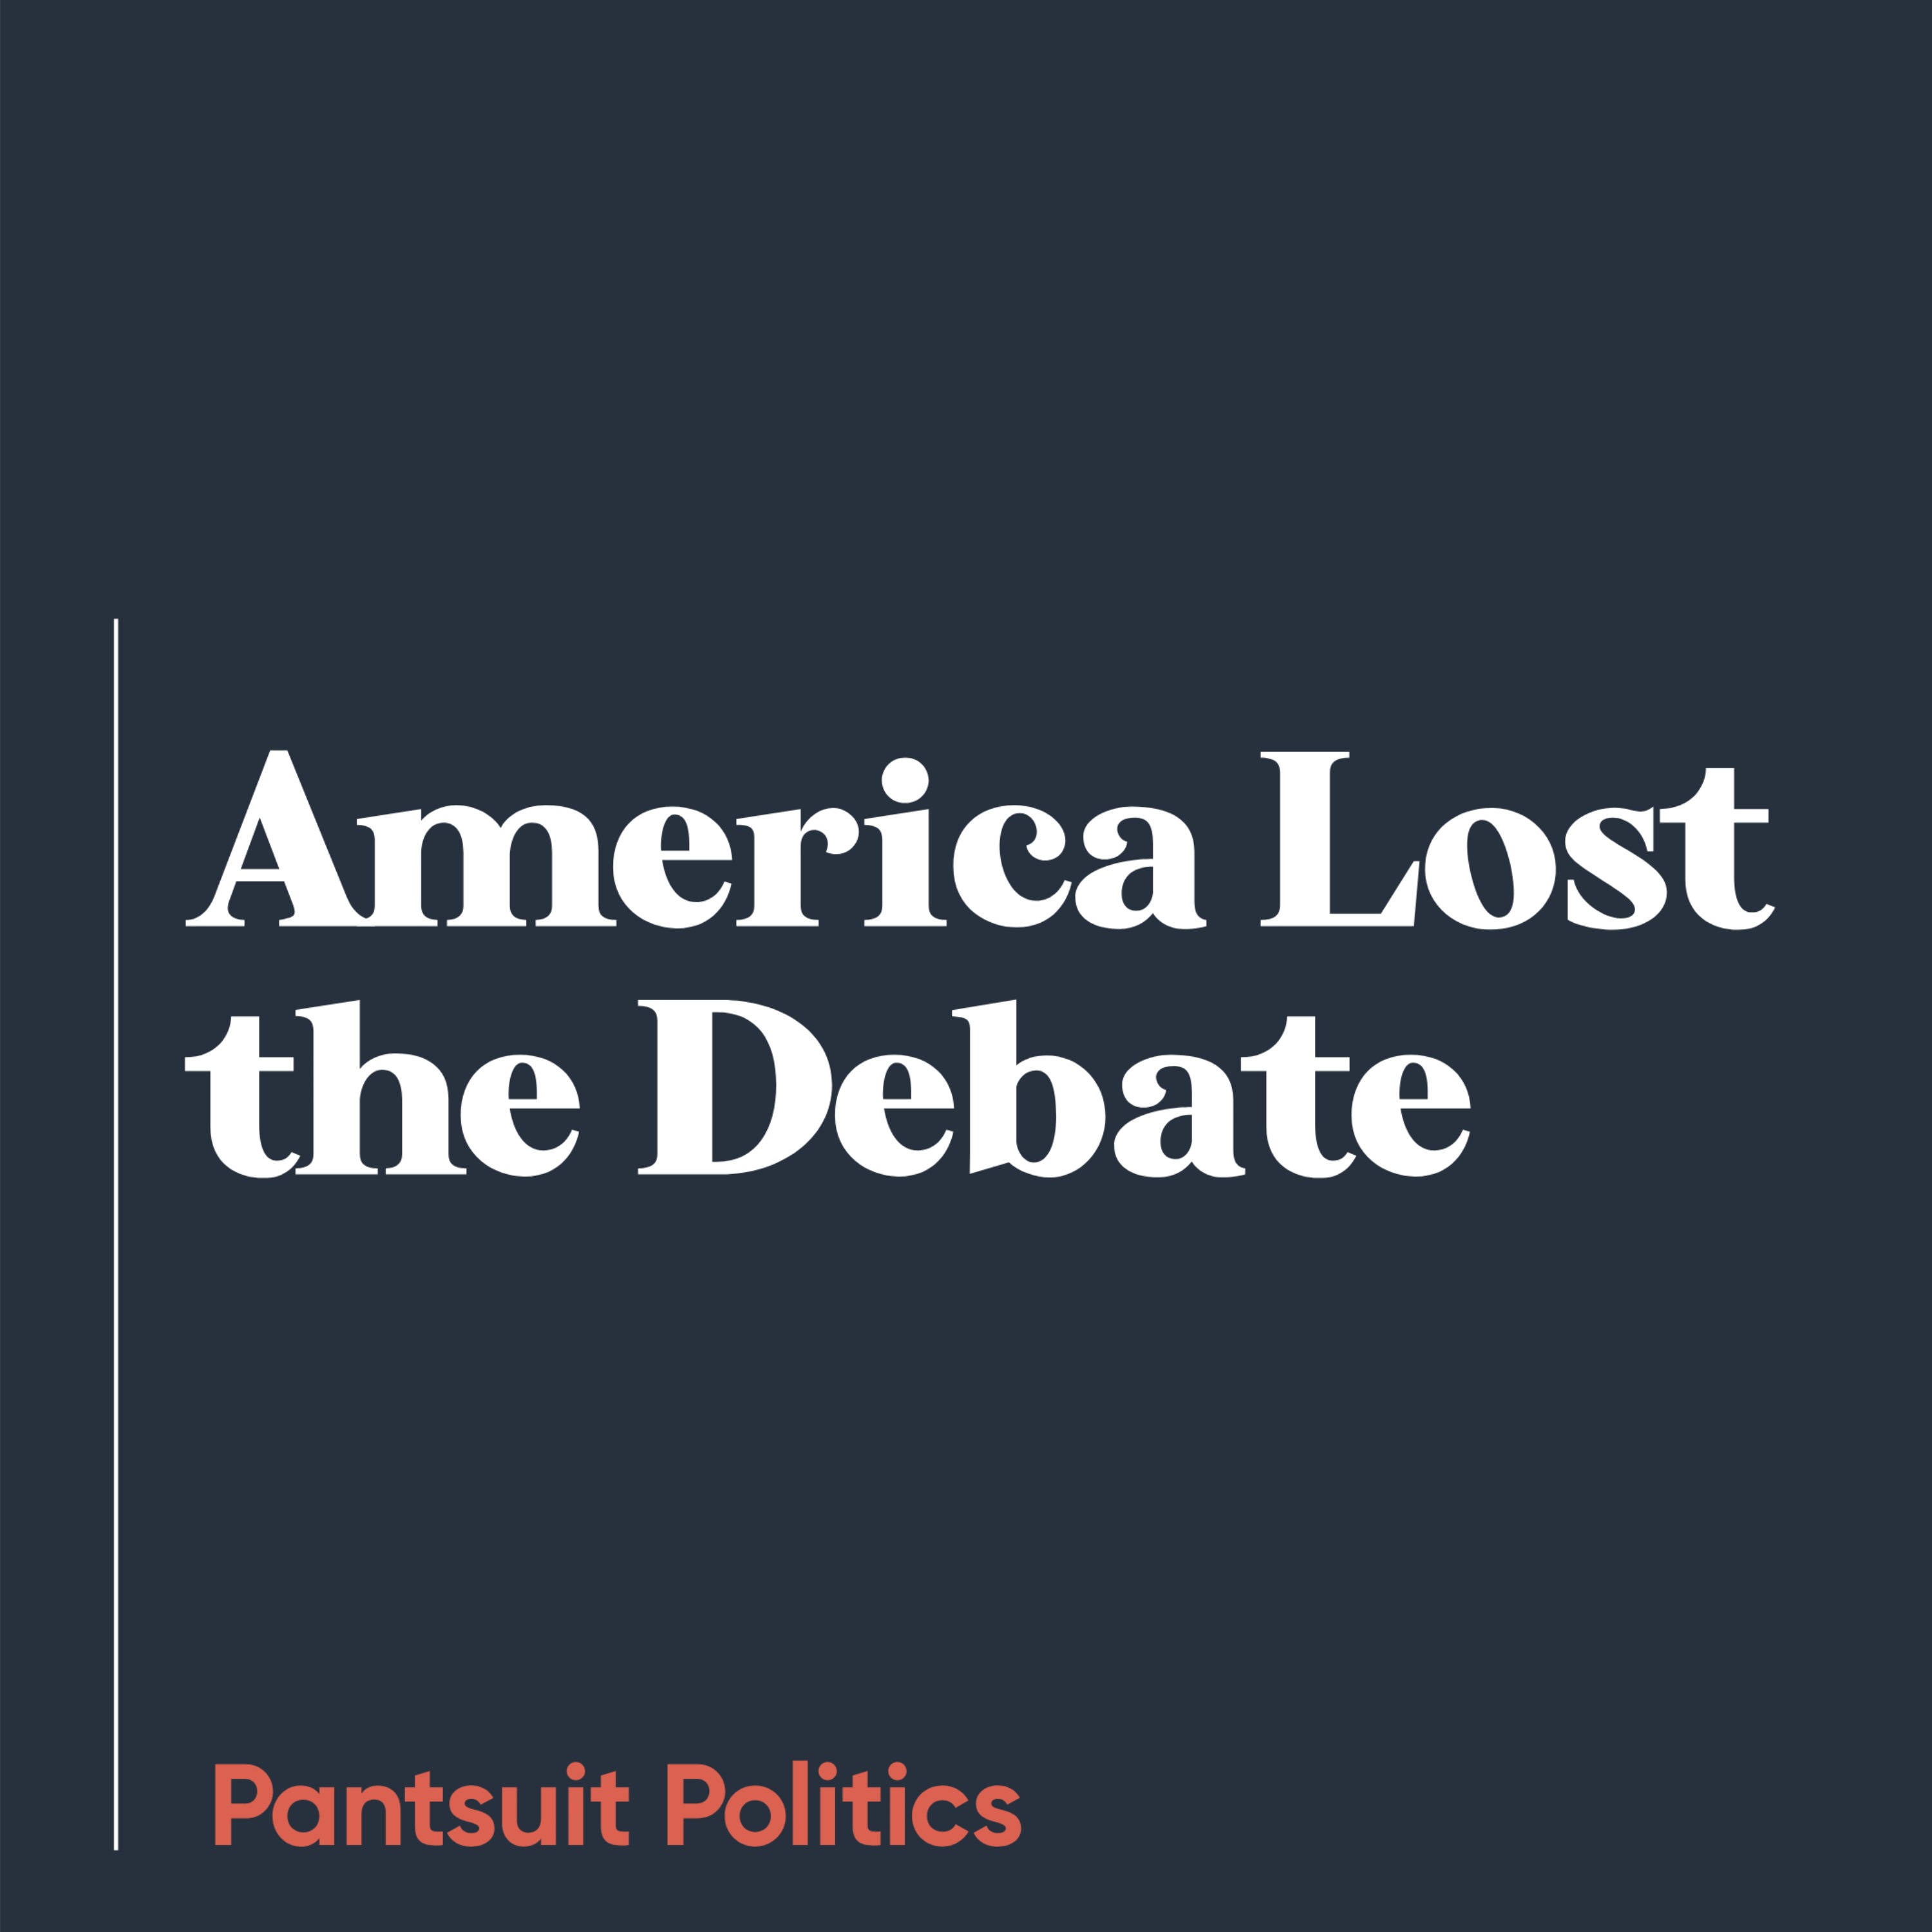 America Lost the Debate